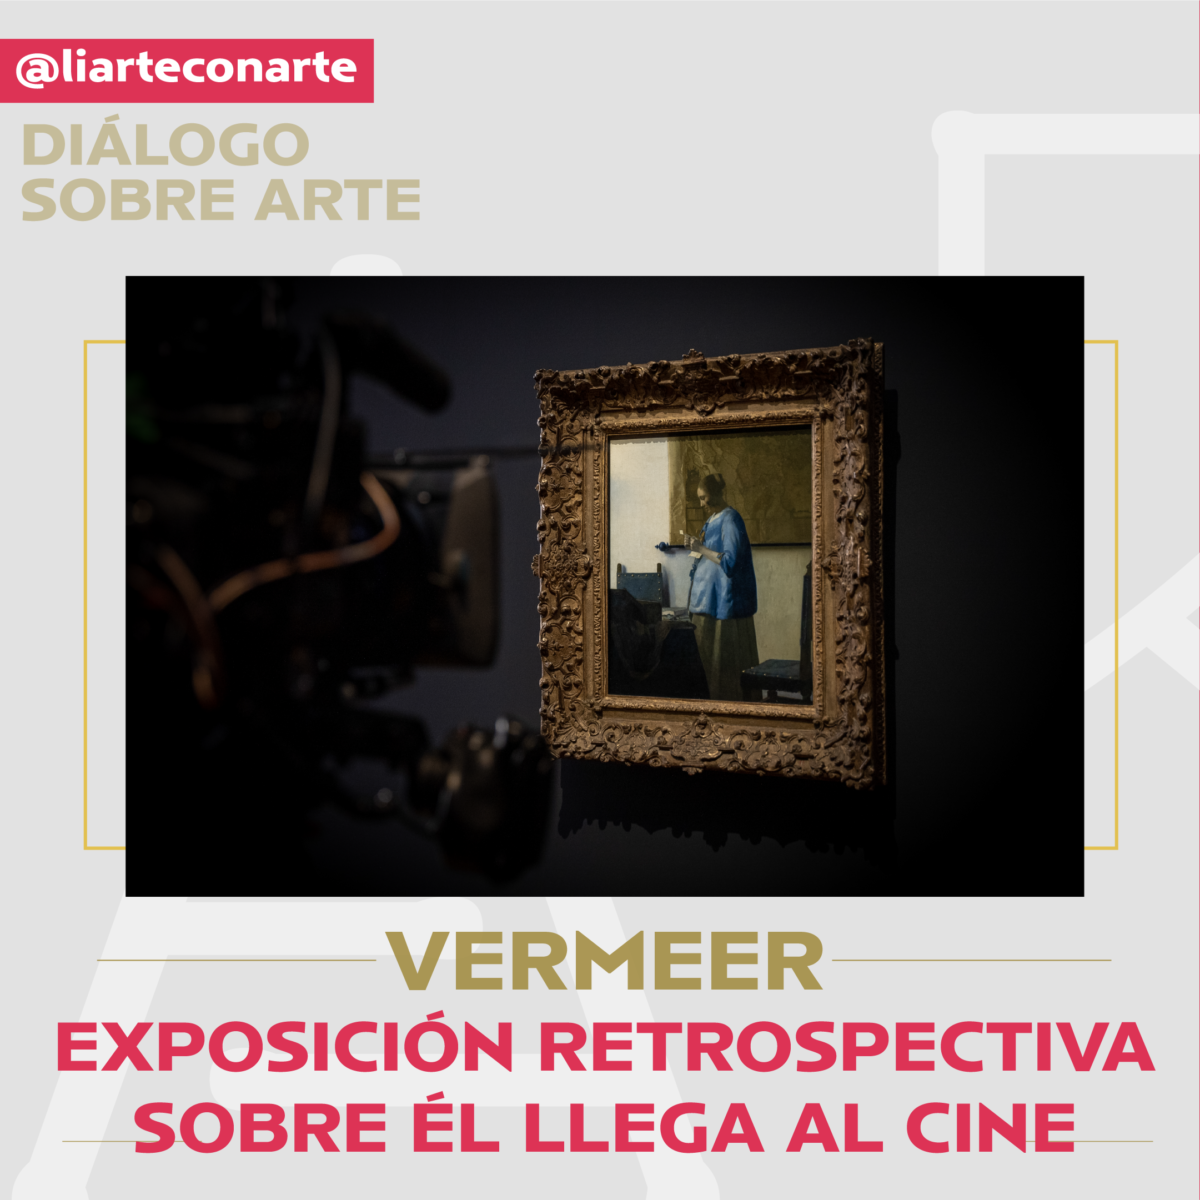 La maravilla de ver la retrospectiva de Vermeer en cine